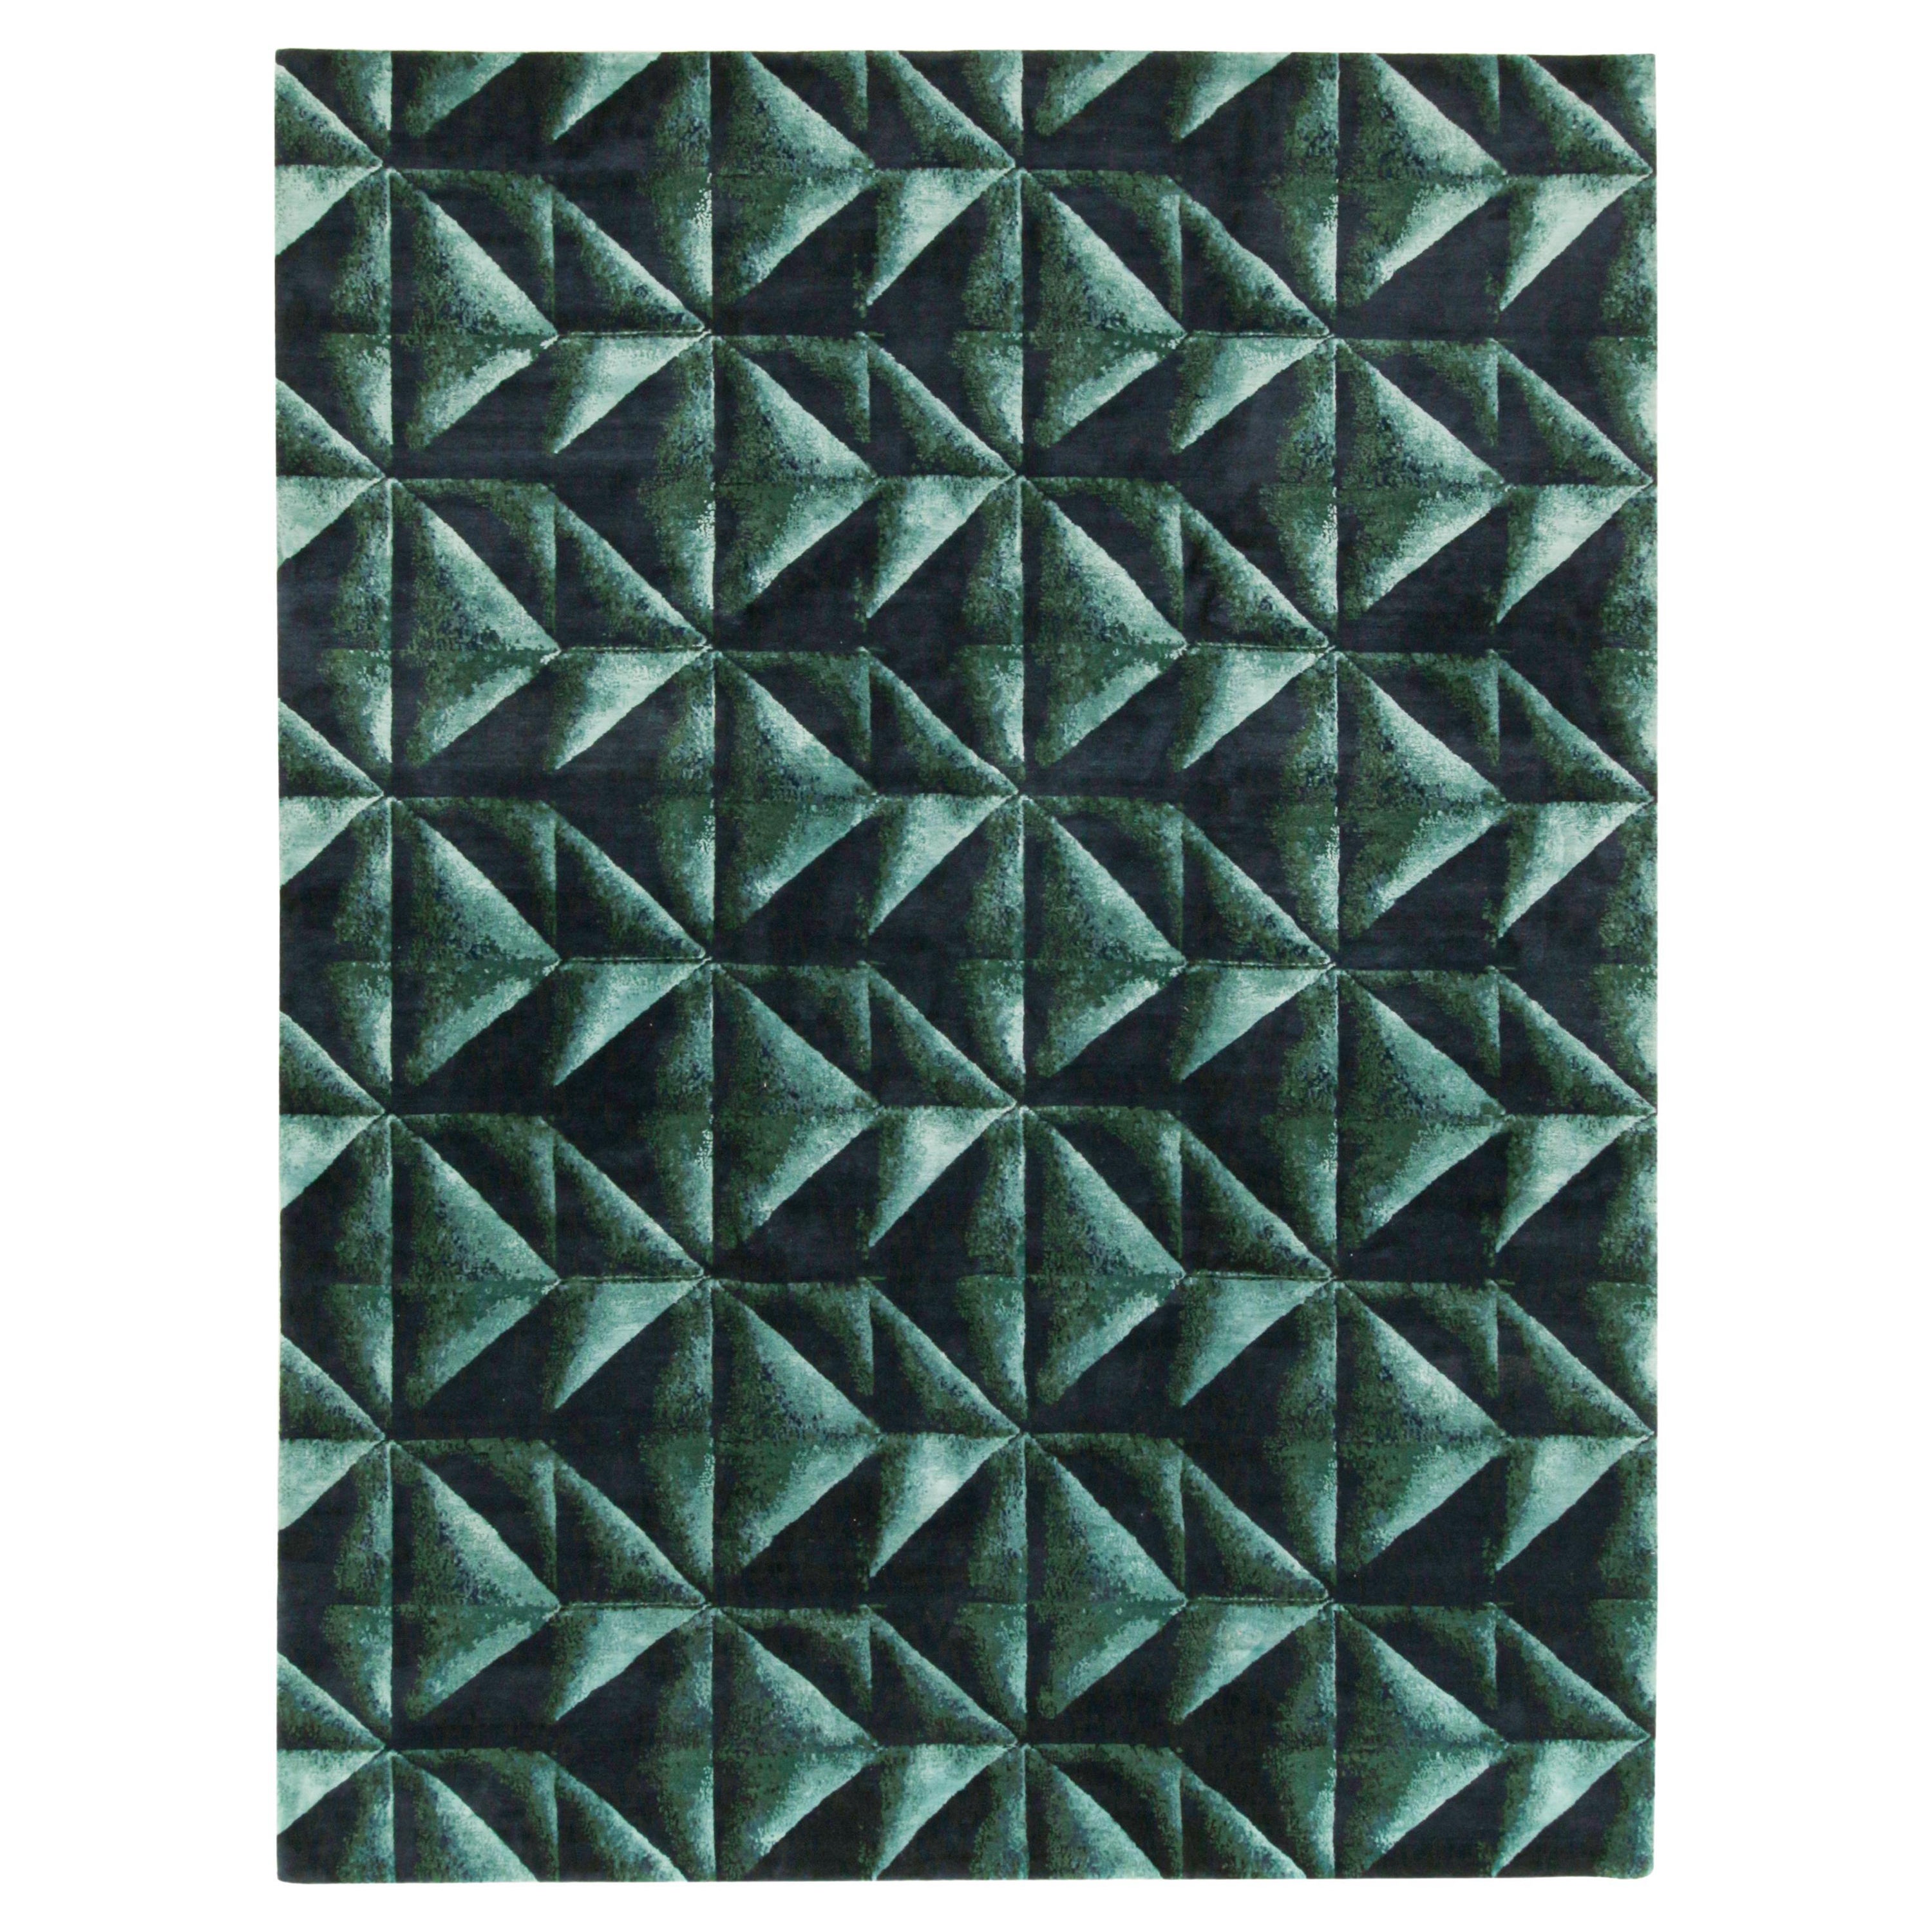 Abstrakter Teppich von Rug & Kilim in tiefem Teal und schwarzem Origami-Muster